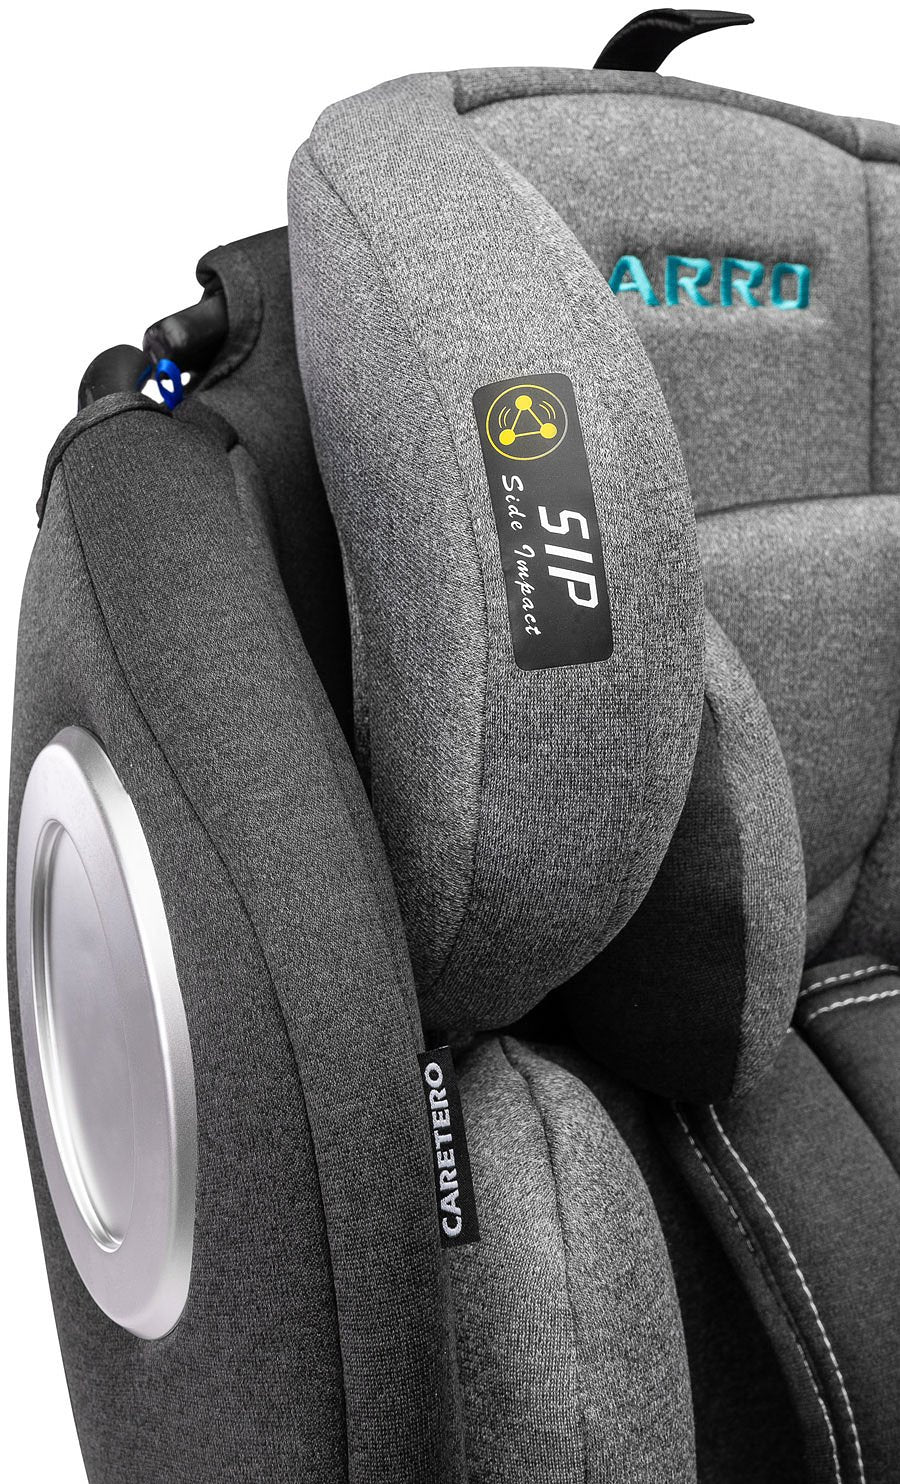 Caretero Arro Autostoel met Isofix (Grijs, 360° draaibaar, 0-36 kg)